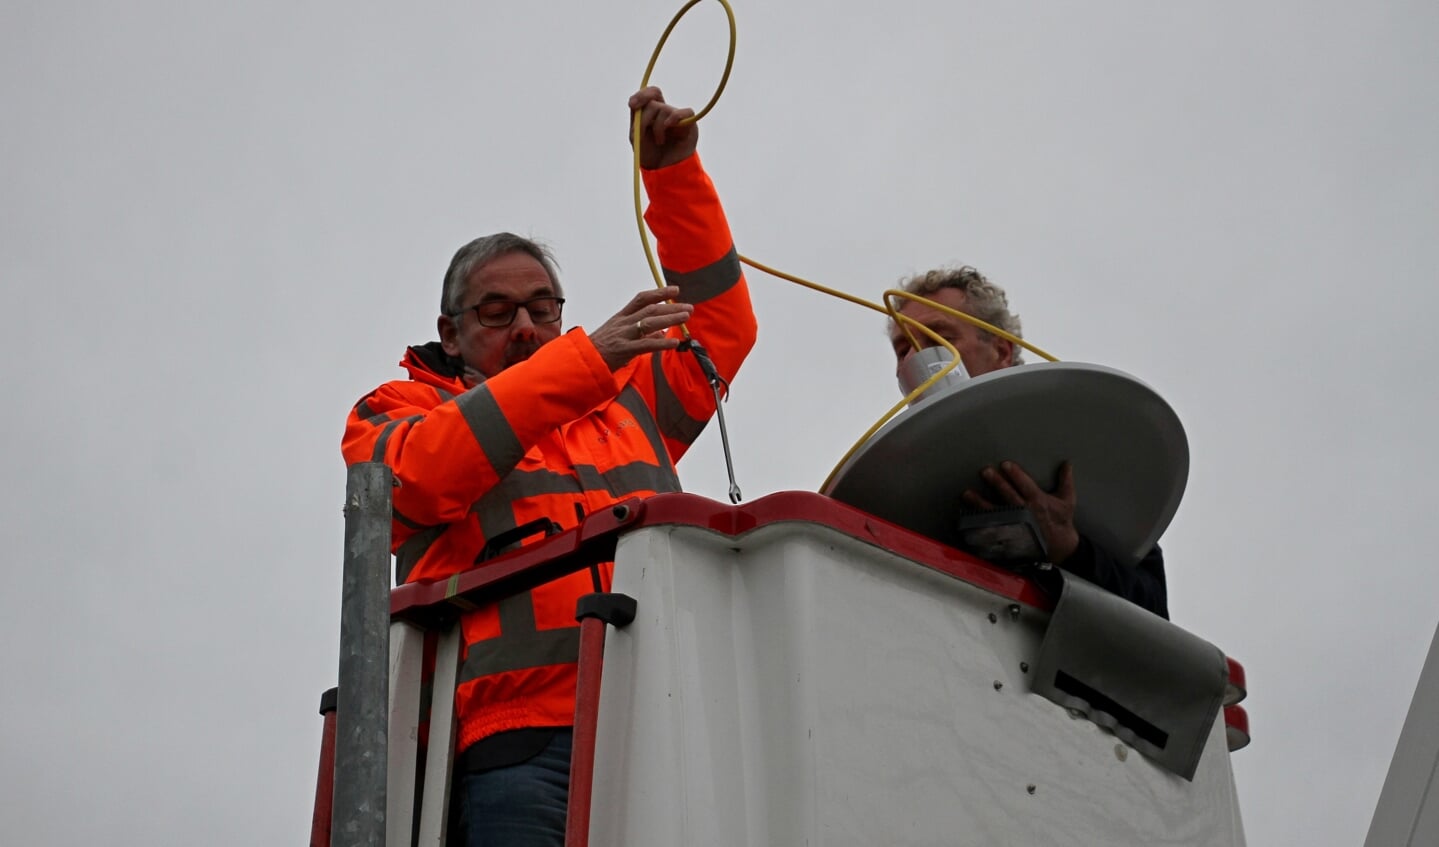 Verwijderen van oude verlichting voor aanbrengen van eerste slimme ledverlichting in de gemeente Bronckhorst in Steenderen. Foto: Liesbeth Spaansen